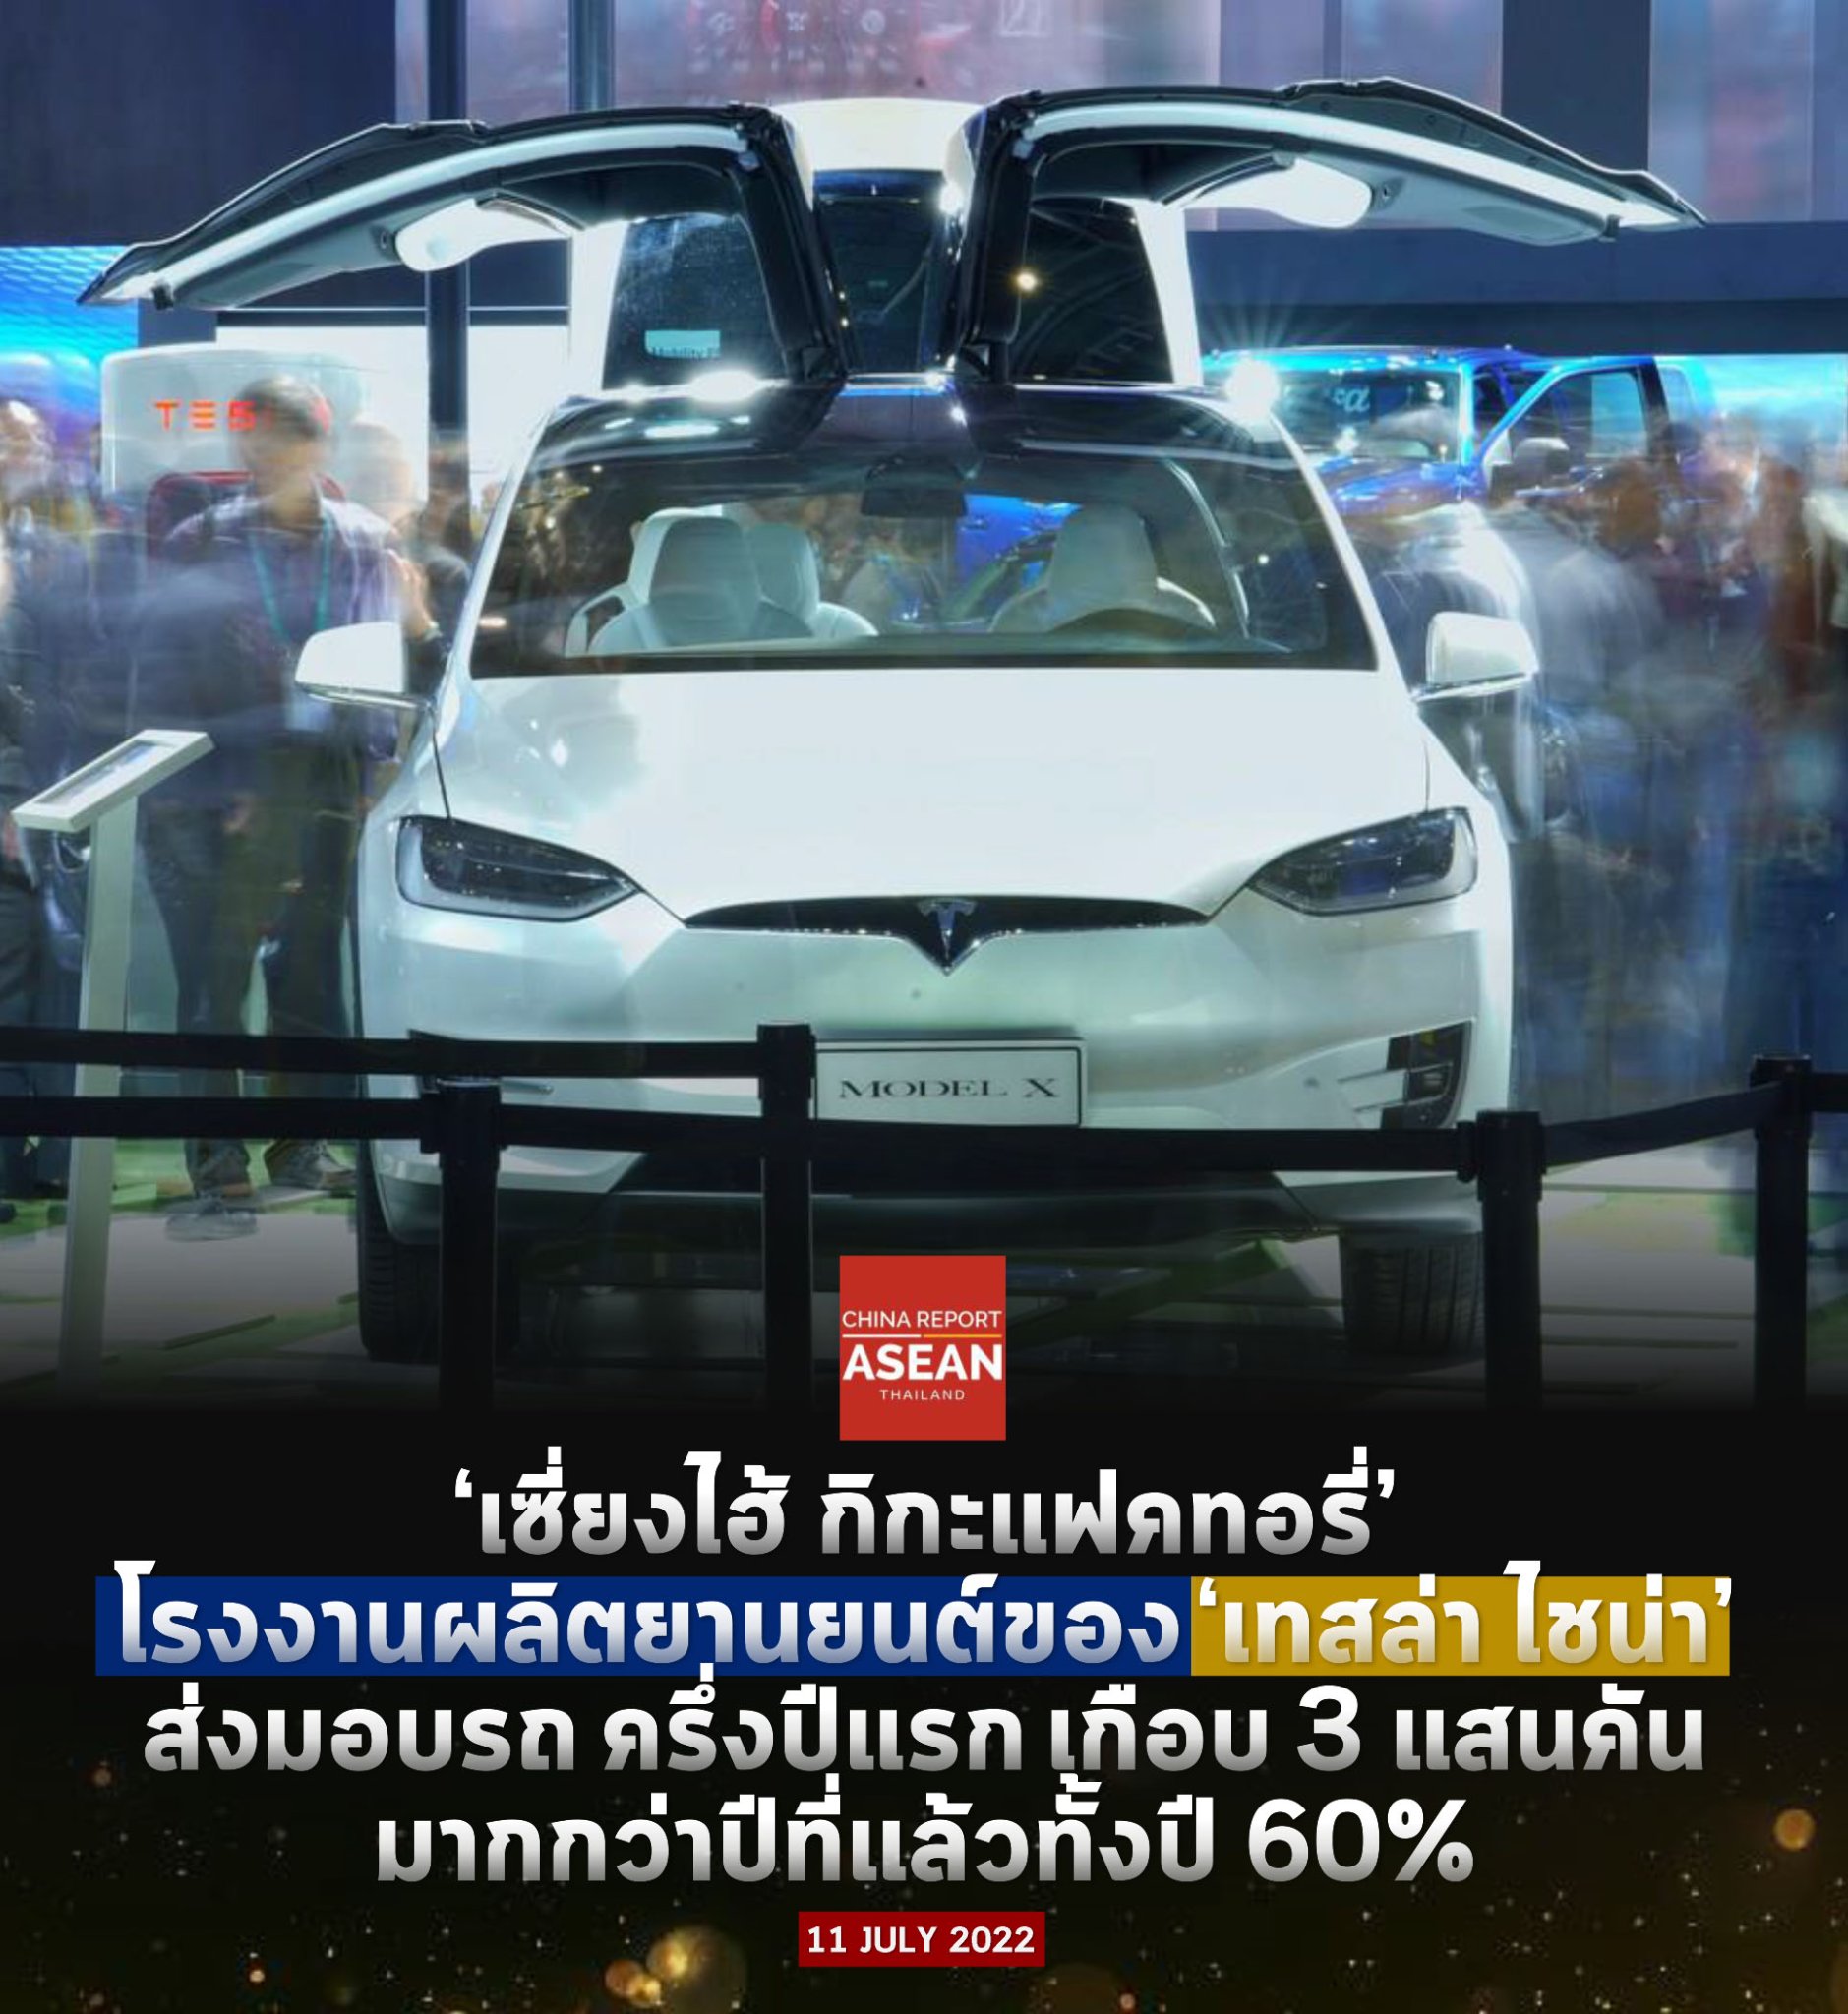 #ChinaReport | ยานยนต์ที่ผลิตออกมาจากโรงงาน ‘เซี่ยงไฮ้ กิกะแฟคทอรี่’ ของเทสล่า ไชน่า ใช้ชิ้นส่วนยานยนต์ ที่ผลิตในจีน สูงถึง 90%